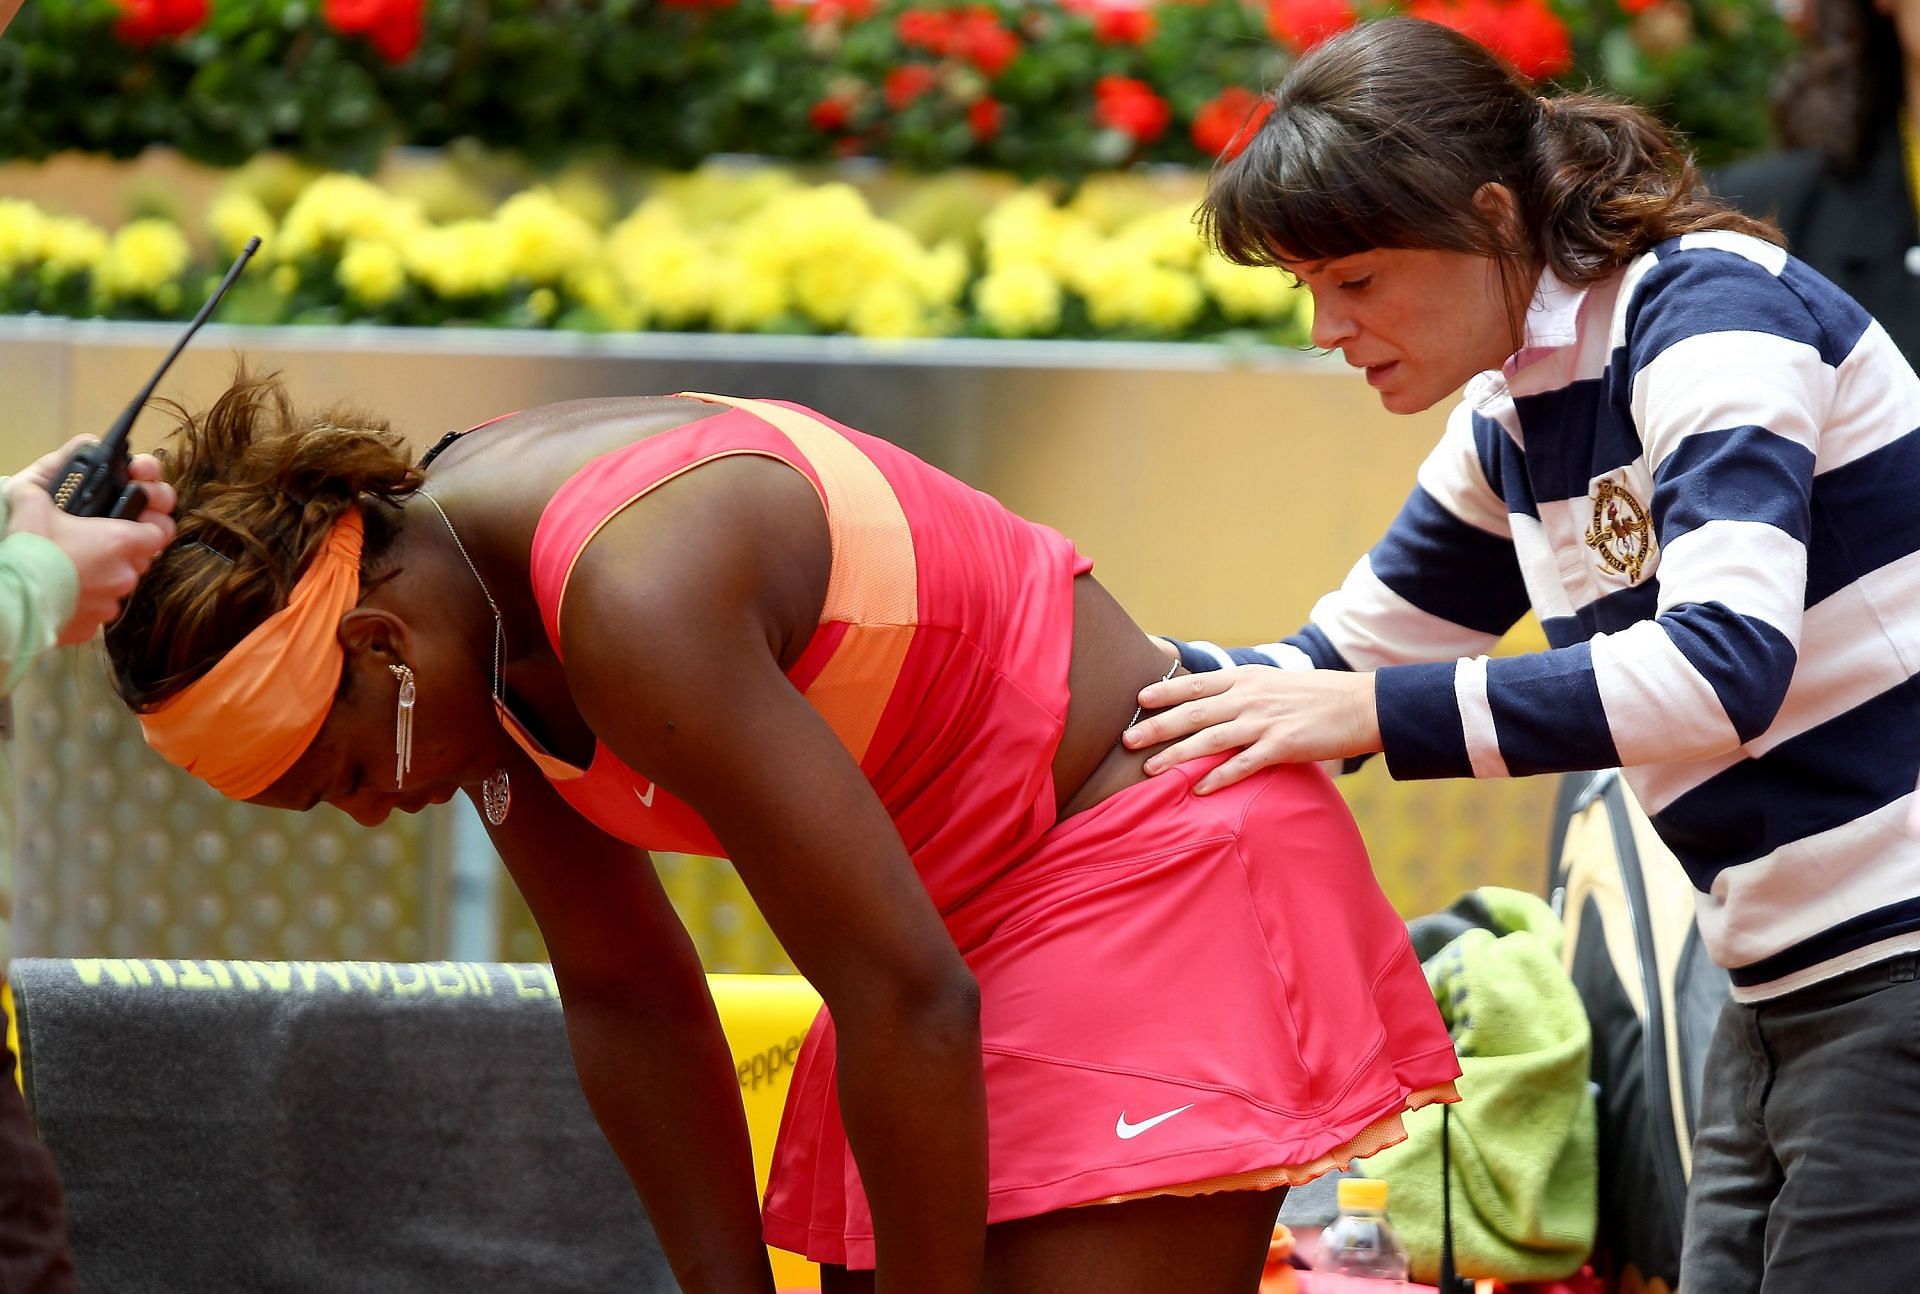 Mutua Madrilena Madrid Open - Day Three - Serena Williams 2010 2004 US Open - Women&#039;s Singles - Quarter Finals - Serena Williams vs Jennifer Capriati